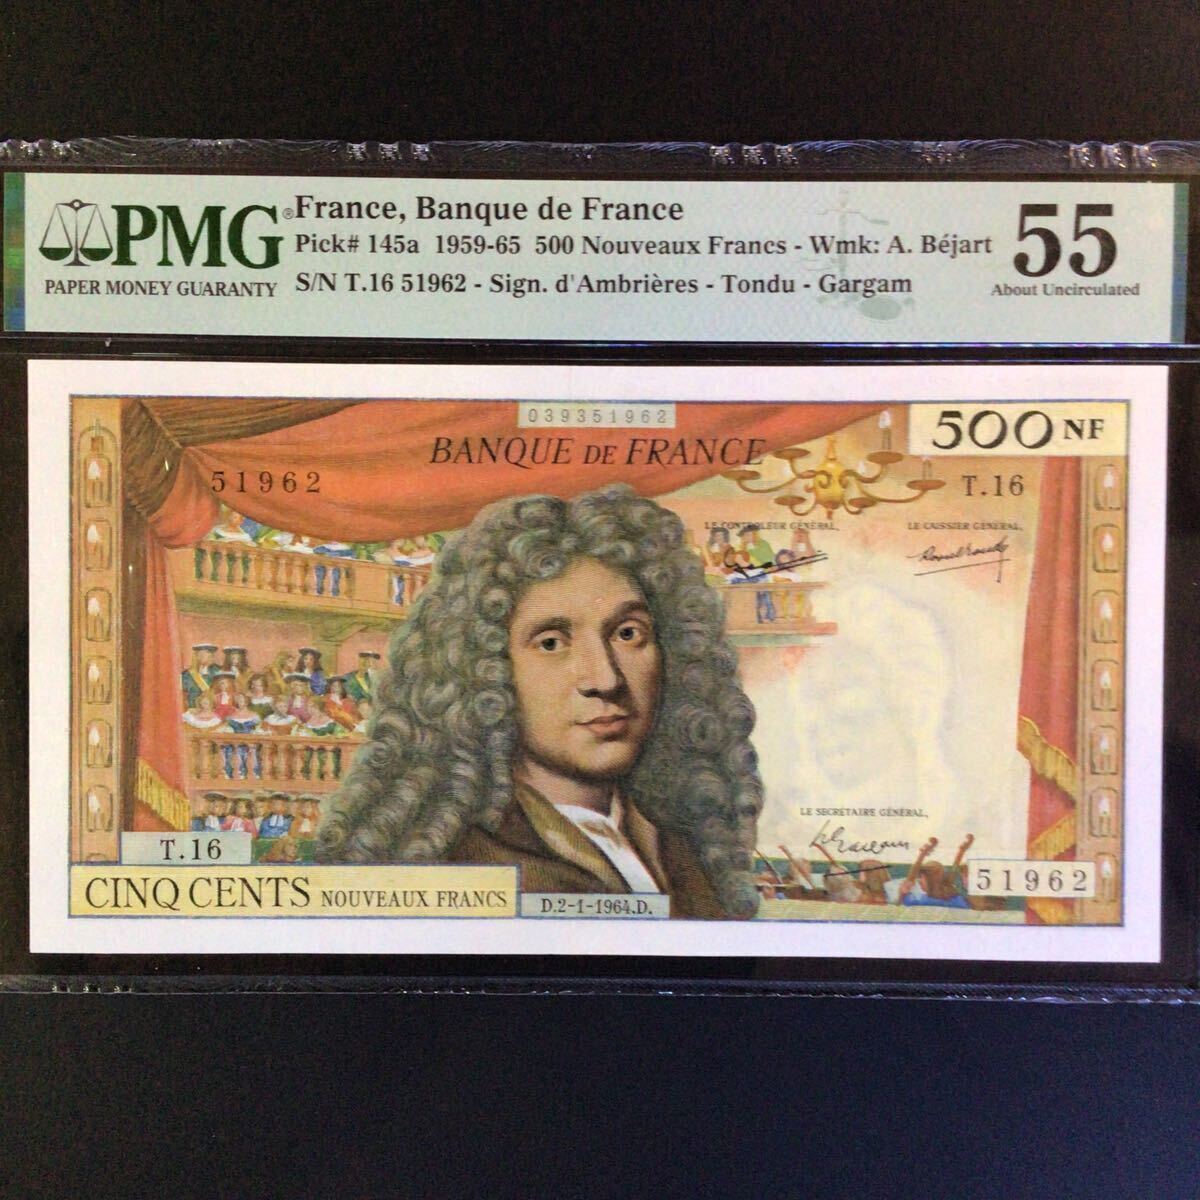 World Banknote Grading FRANCE《Banque de France》500 Nouveaux Francs【1964】『PMG Grading About Uncirculated 55』_画像1